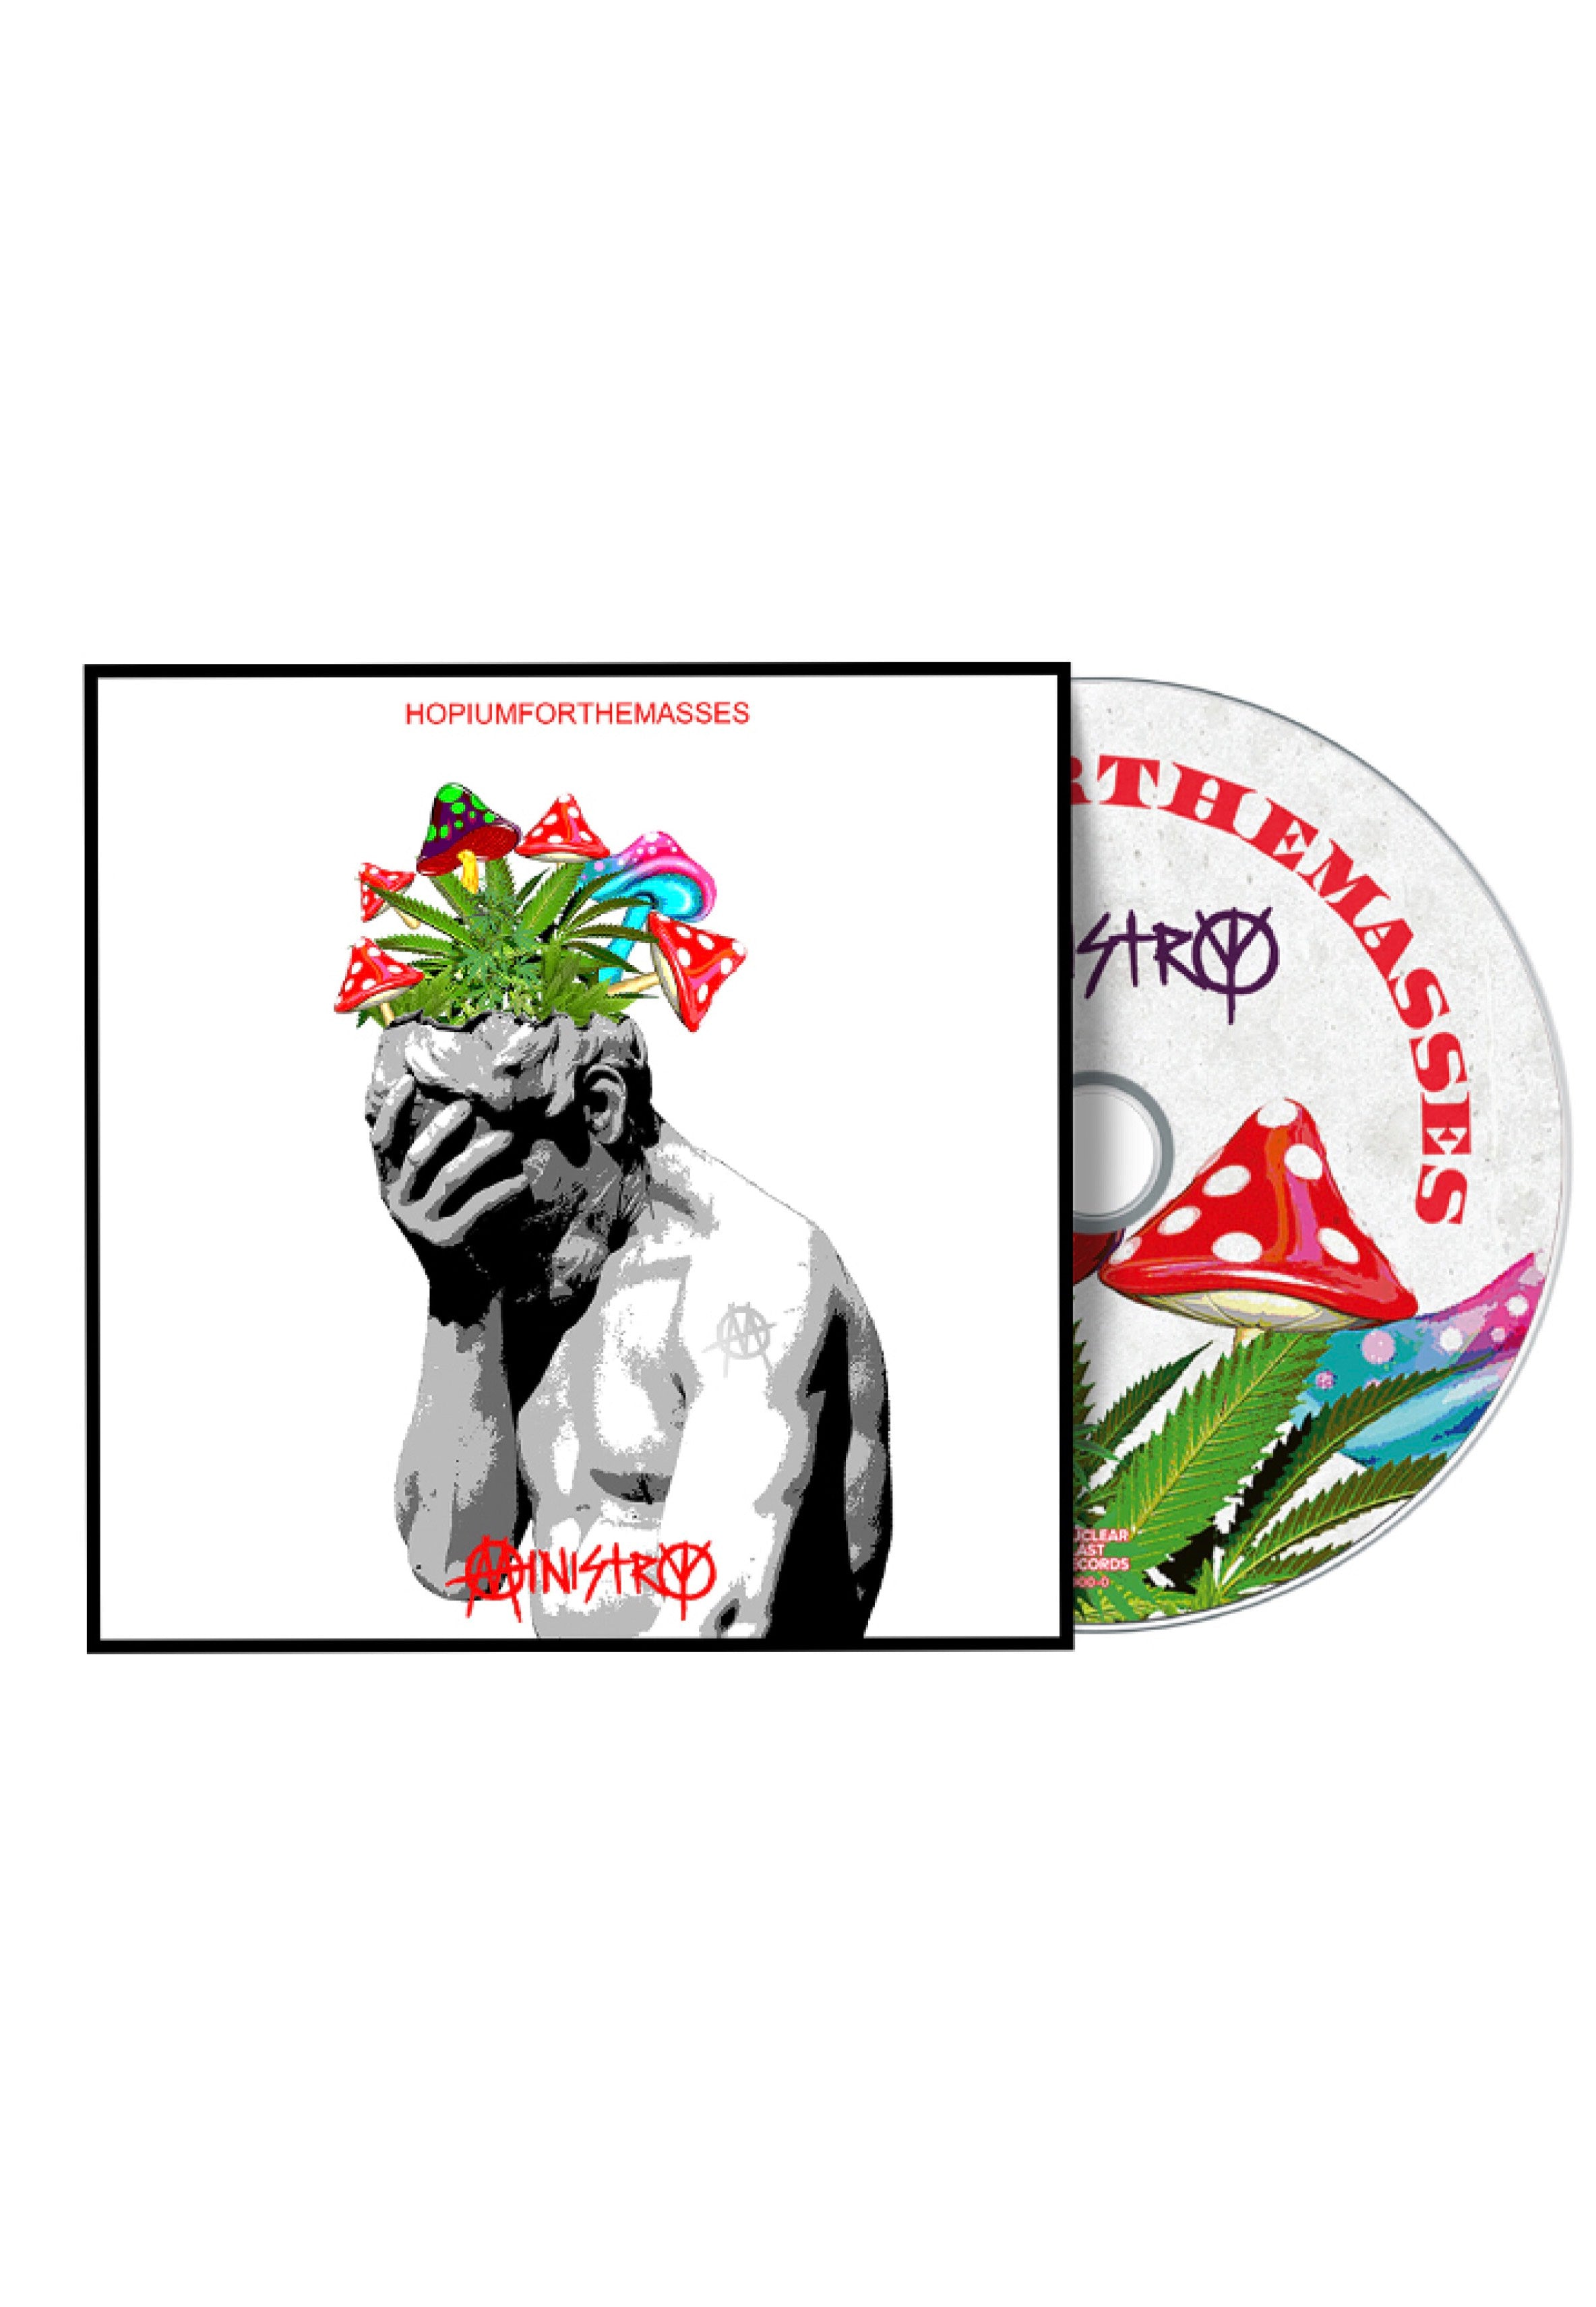 Ministry - Hopiumforthemasses - CD